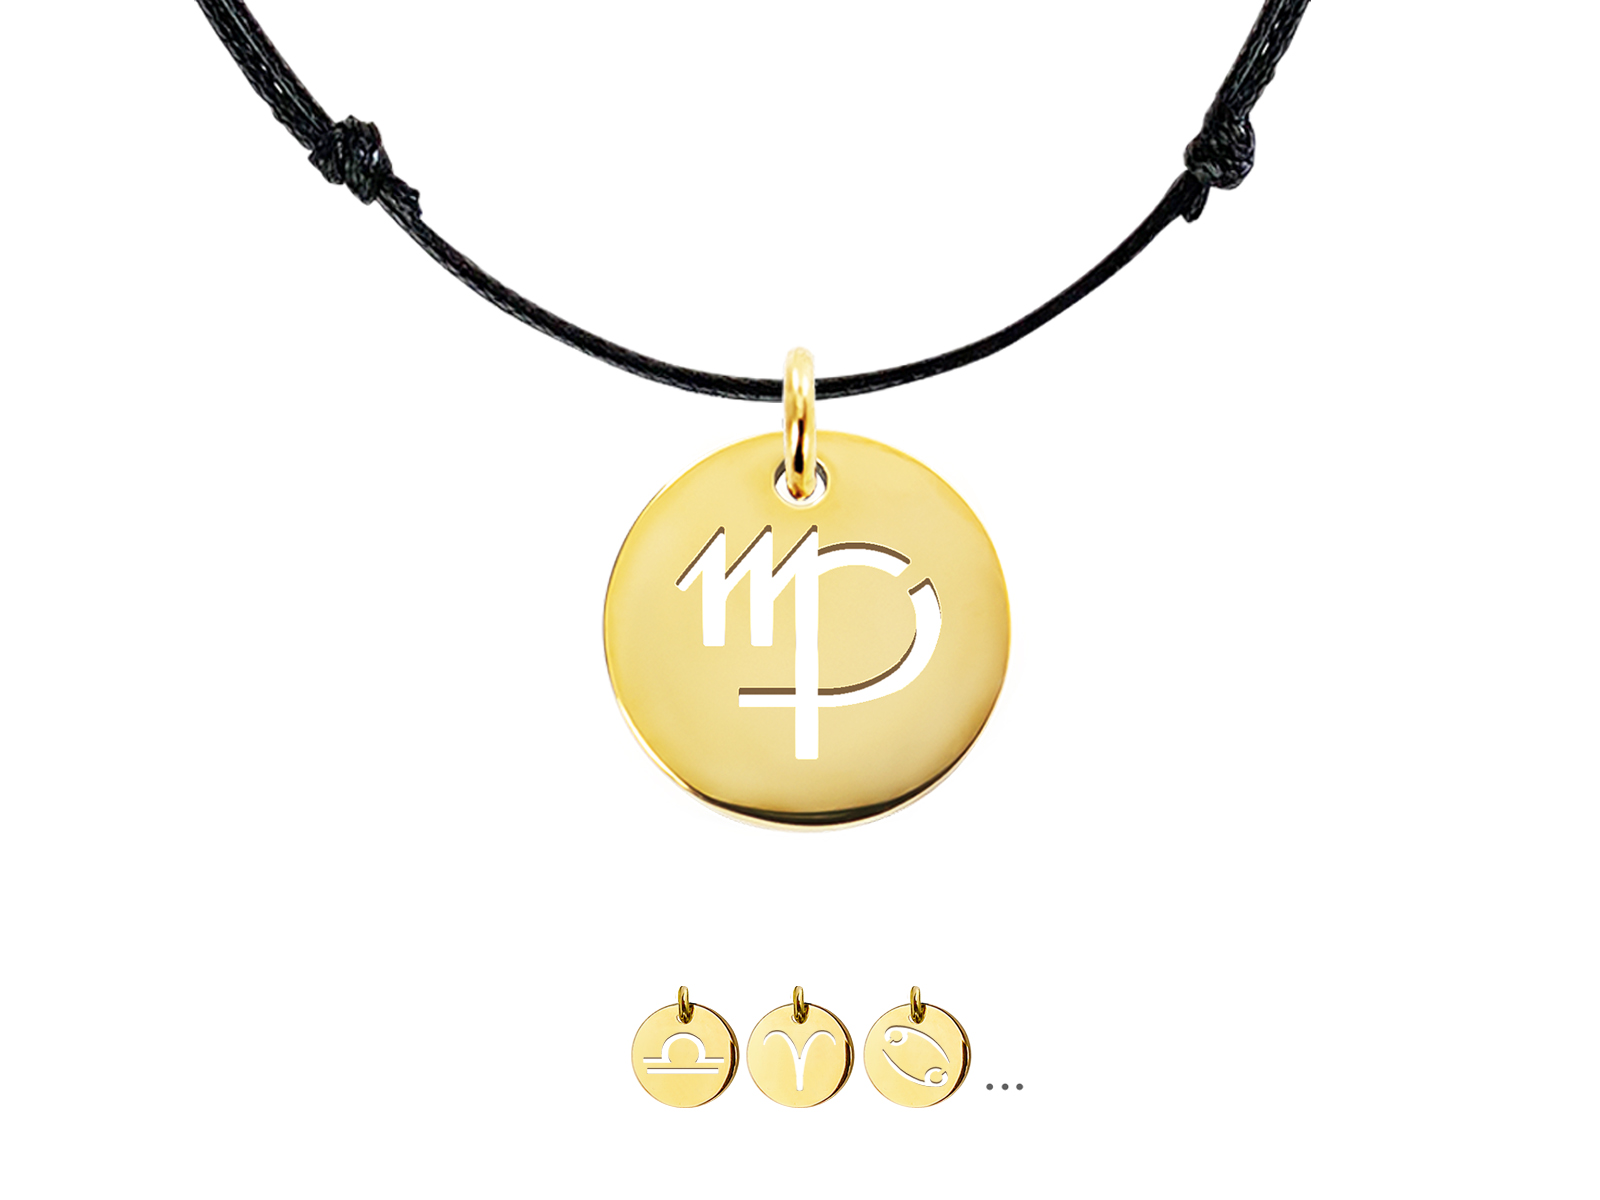 Collier ajustable décoré d'un pendentif signe astrologique en acier inoxydable doré